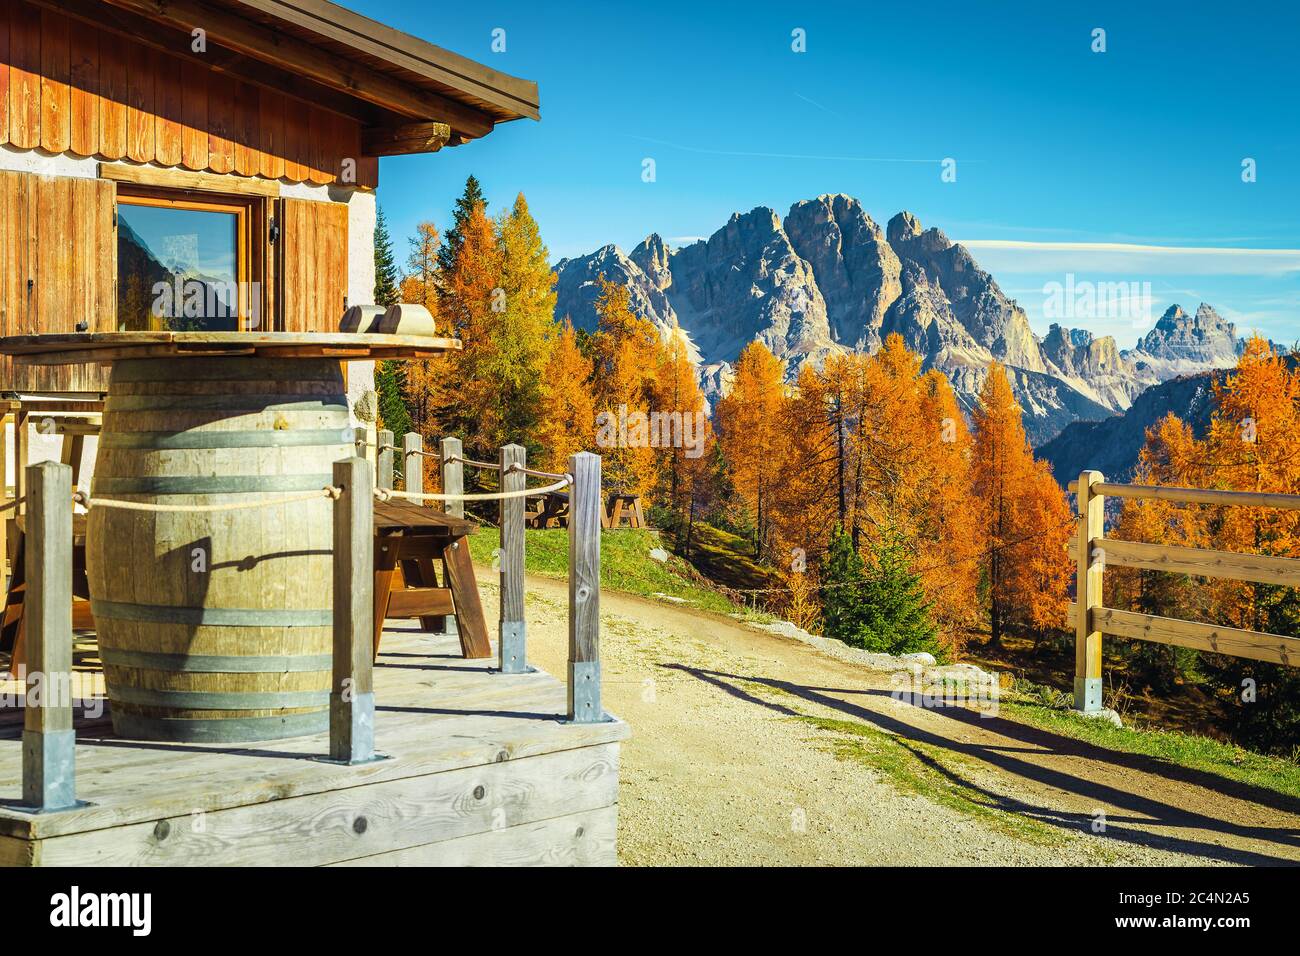 Accogliente alloggio con casa in legno in montagna. Fantastica località ricreativa ed escursionistica nella colorata foresta d'autunno, Dolomiti, Italia, Foto Stock